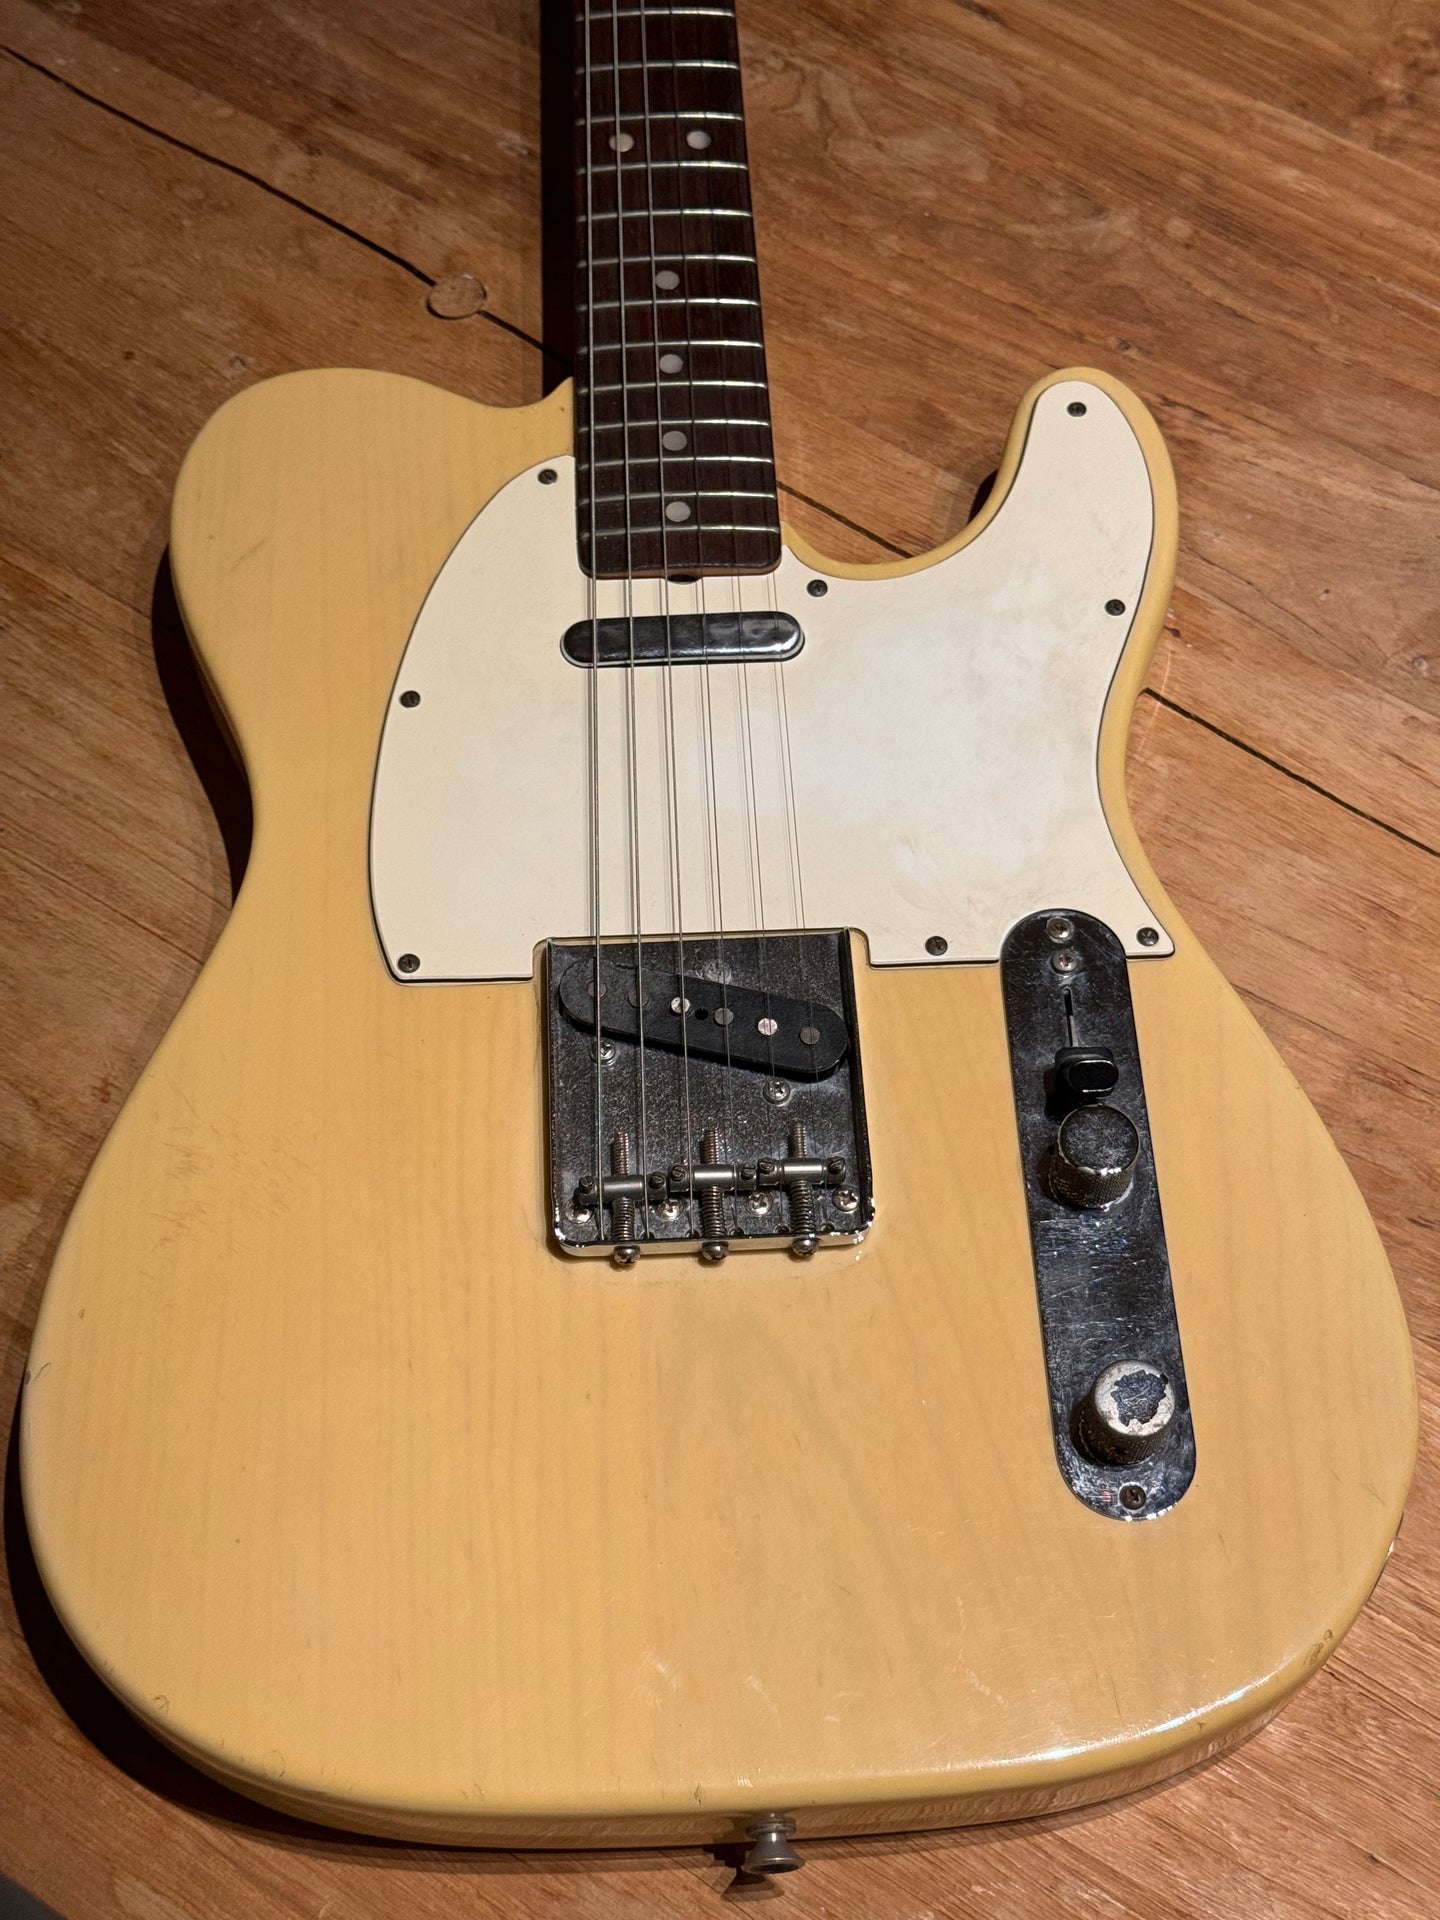 1973 Fender Telecaster Blond